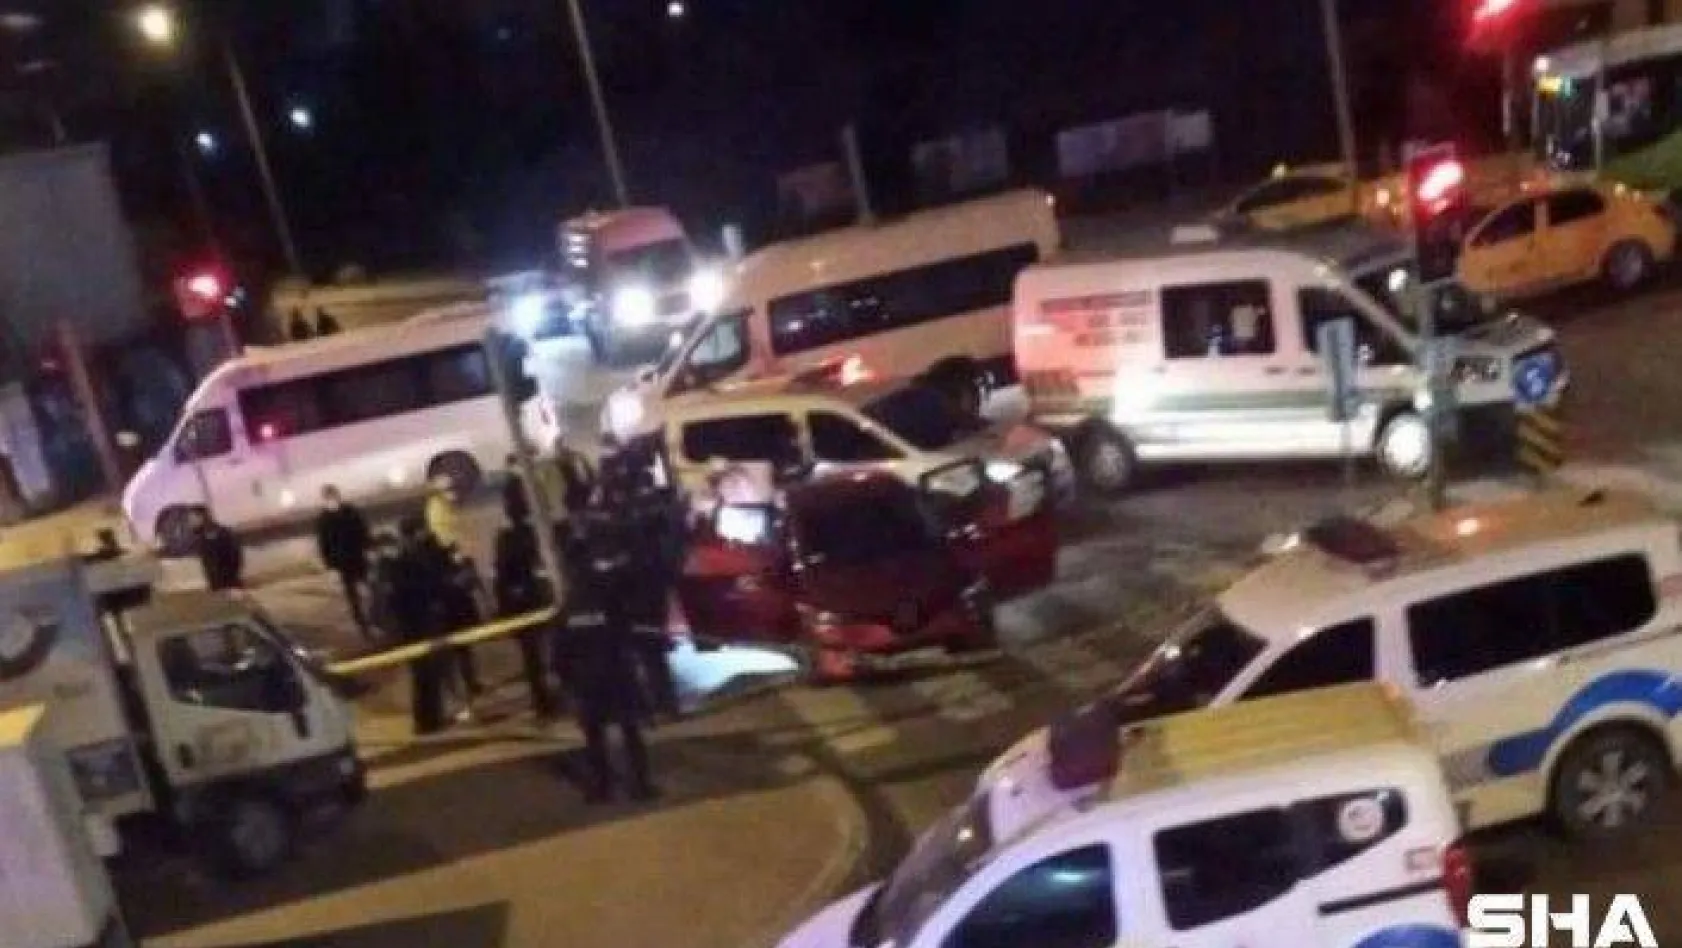 Otomobile kurşun yağdırdılar: 2 ölü, 1 yaralı